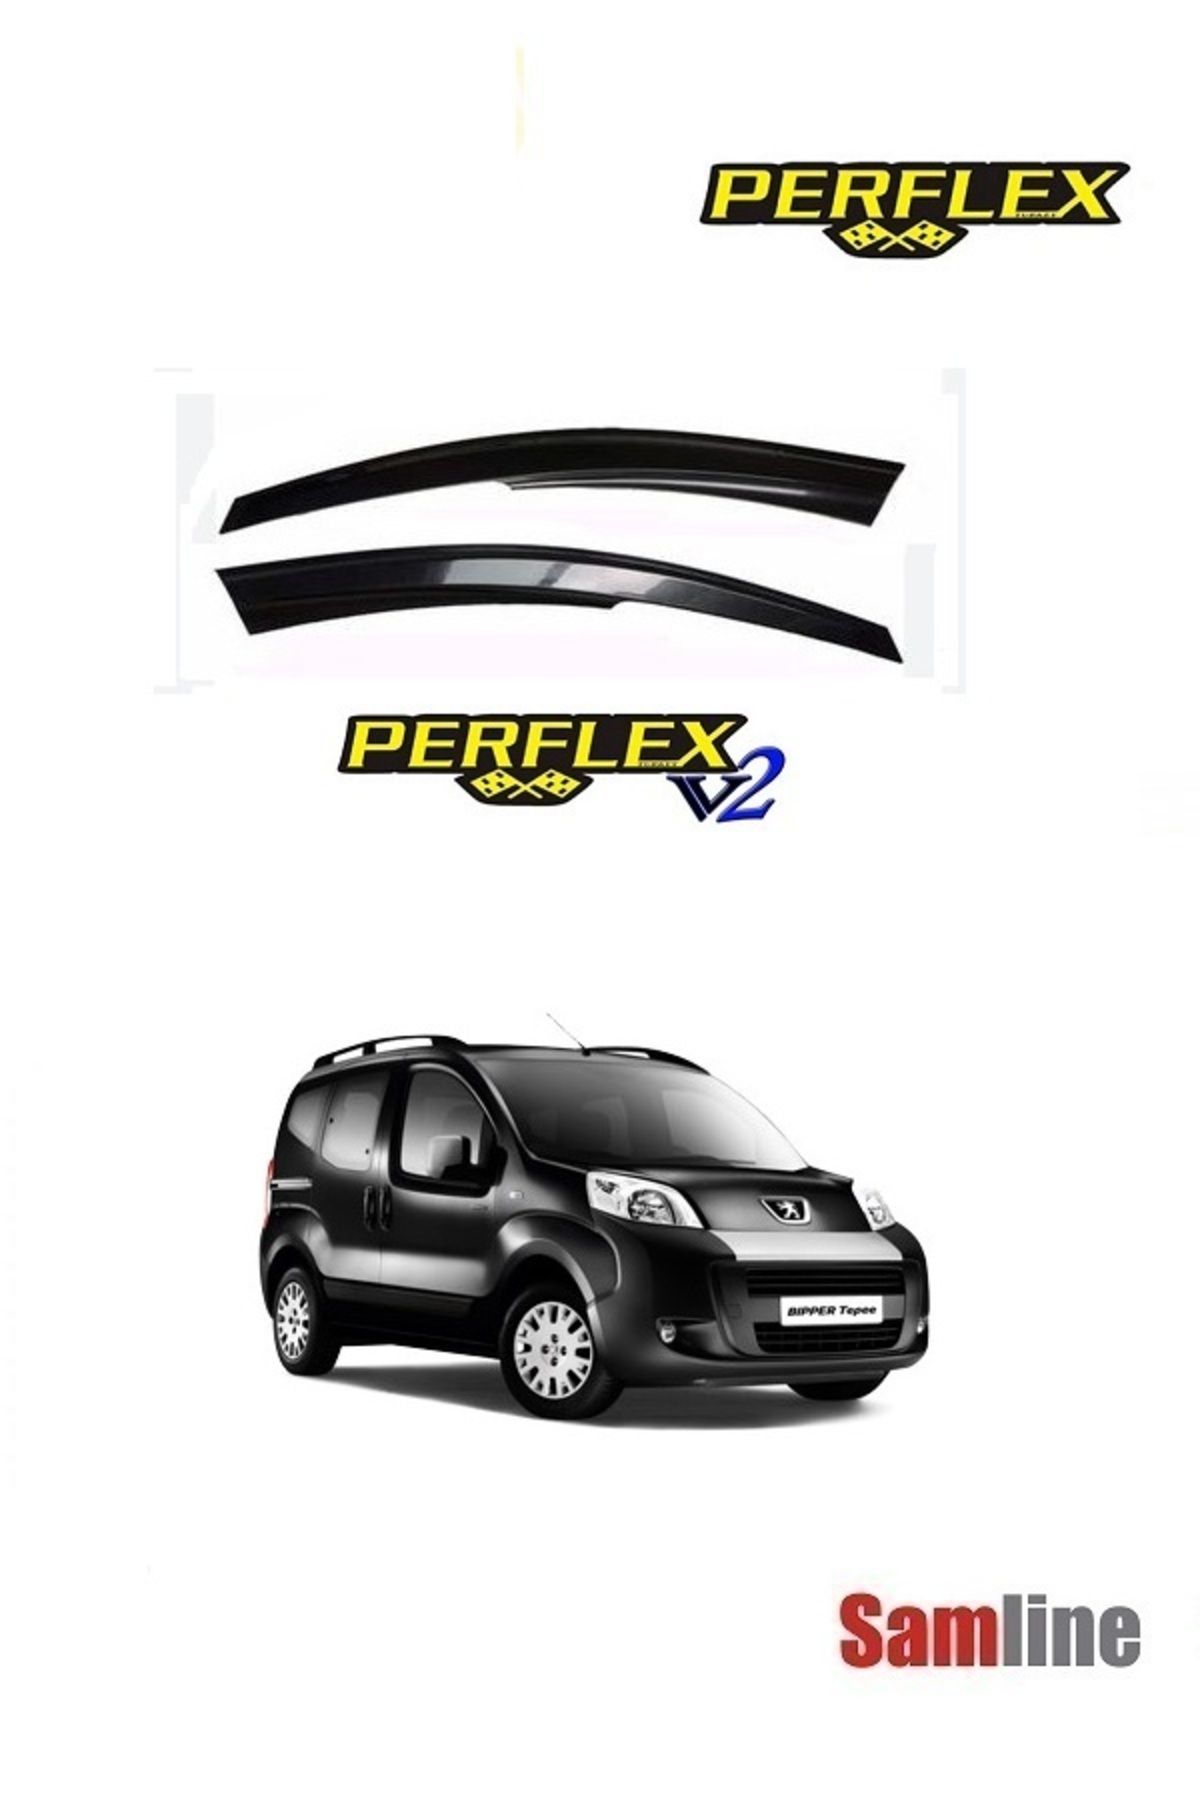 PERFLEX Peugeot Bipper Combi 2014 Modeller için Cam Rüzgarlığı Takımı 2'li Set